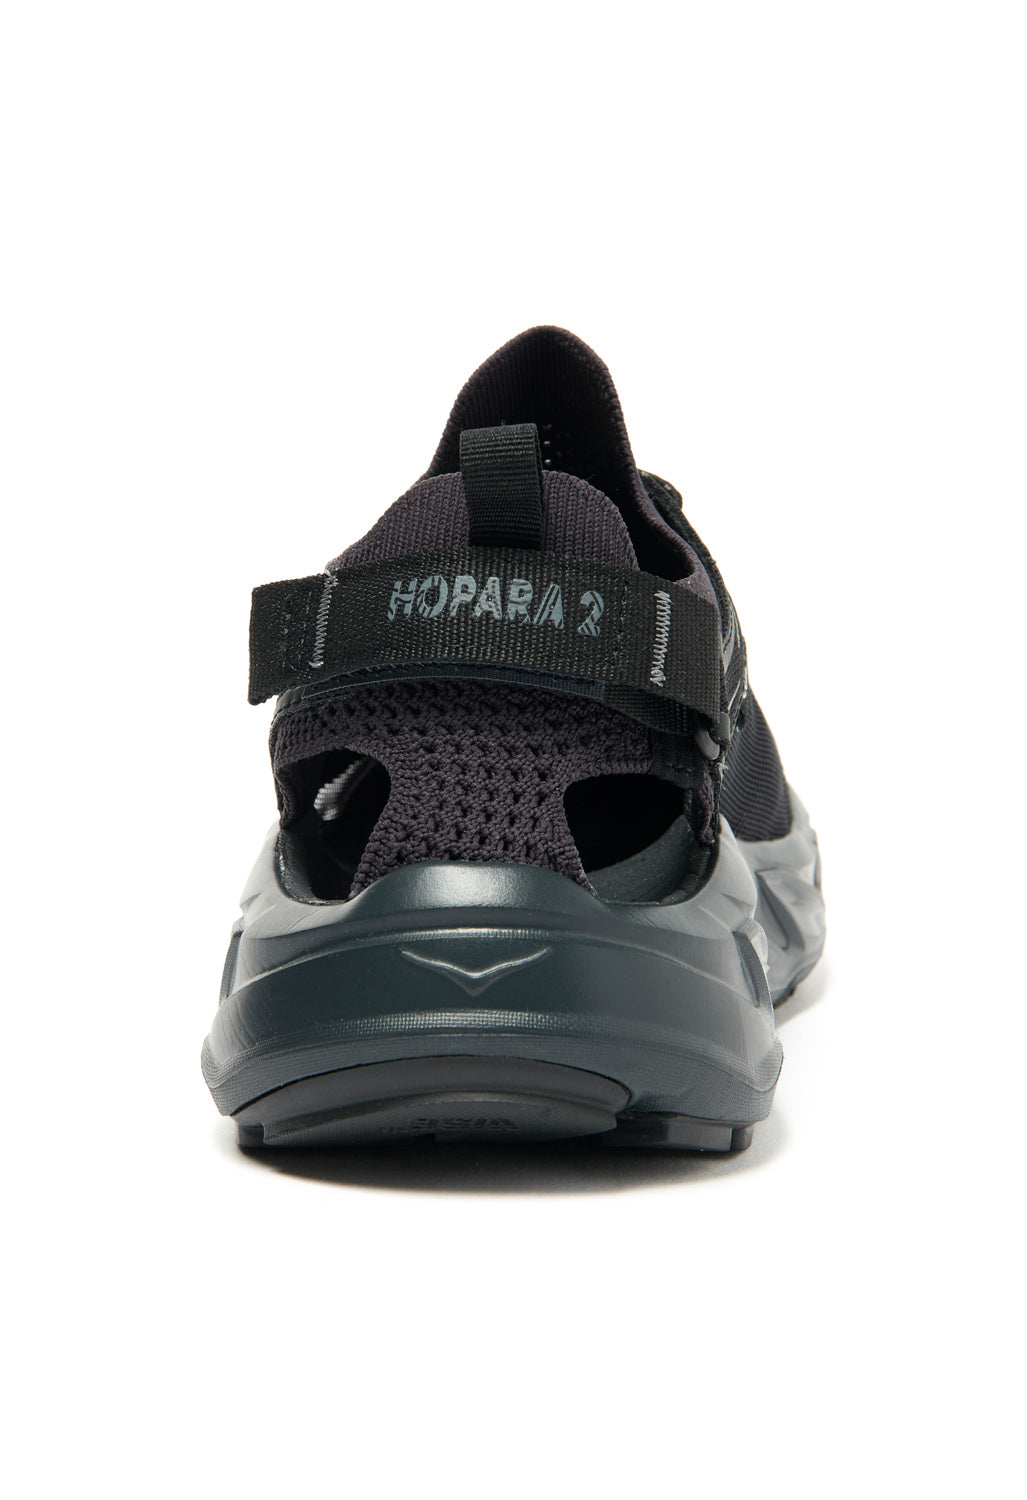 Hoka Men's Hopara 2 - Black / Black